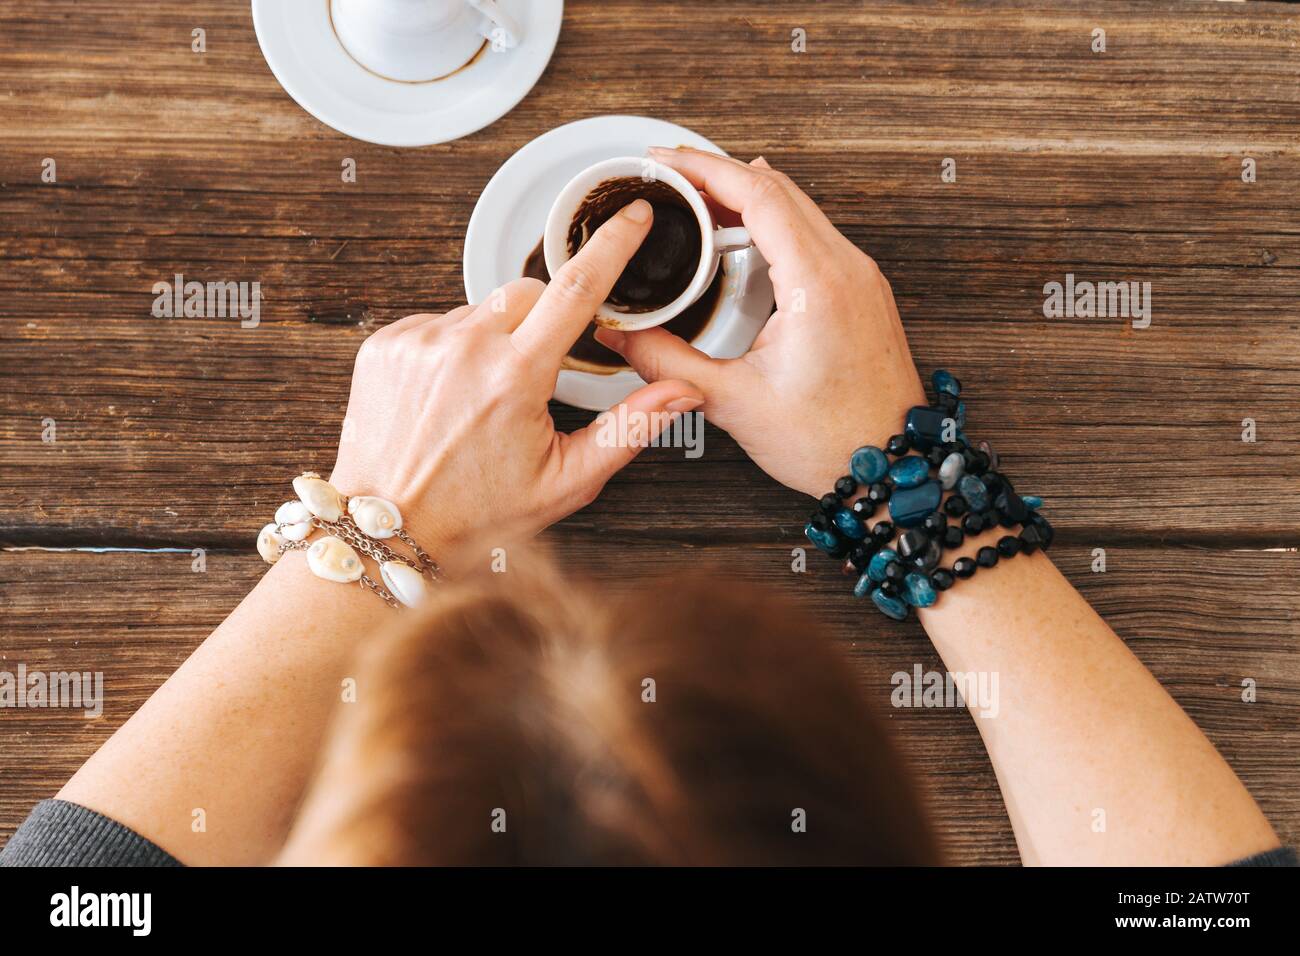 une femme tient le mug et raconte la fortune avec une tasse à café turque traditionnelle Banque D'Images